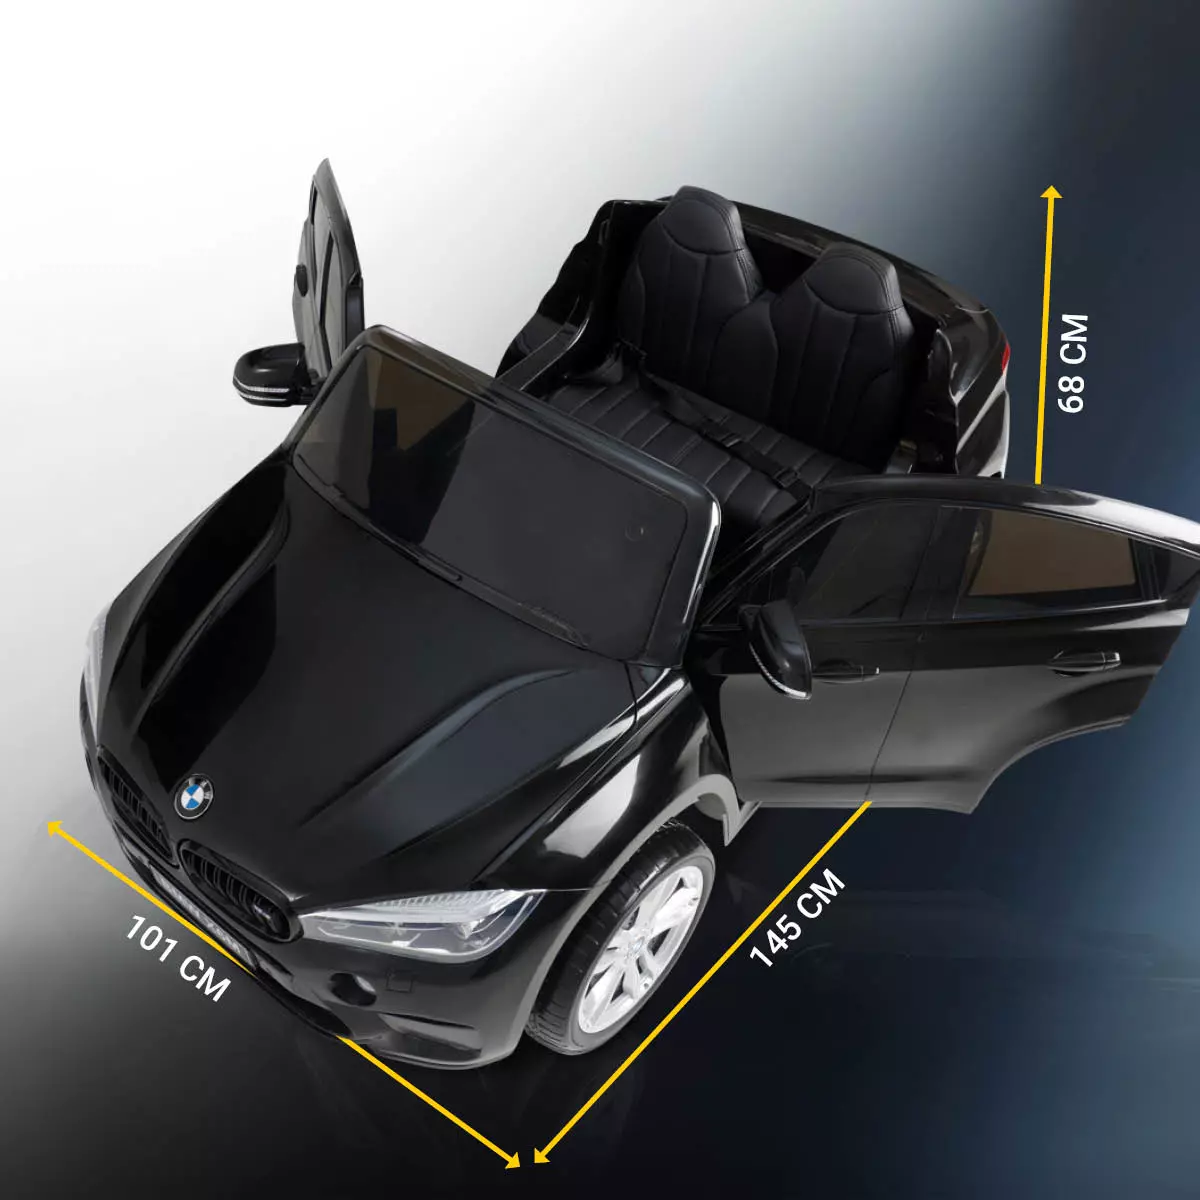 BMW Kinderauto mit geöffneten Türen und Maßen von 145 x 101 x 68 cm